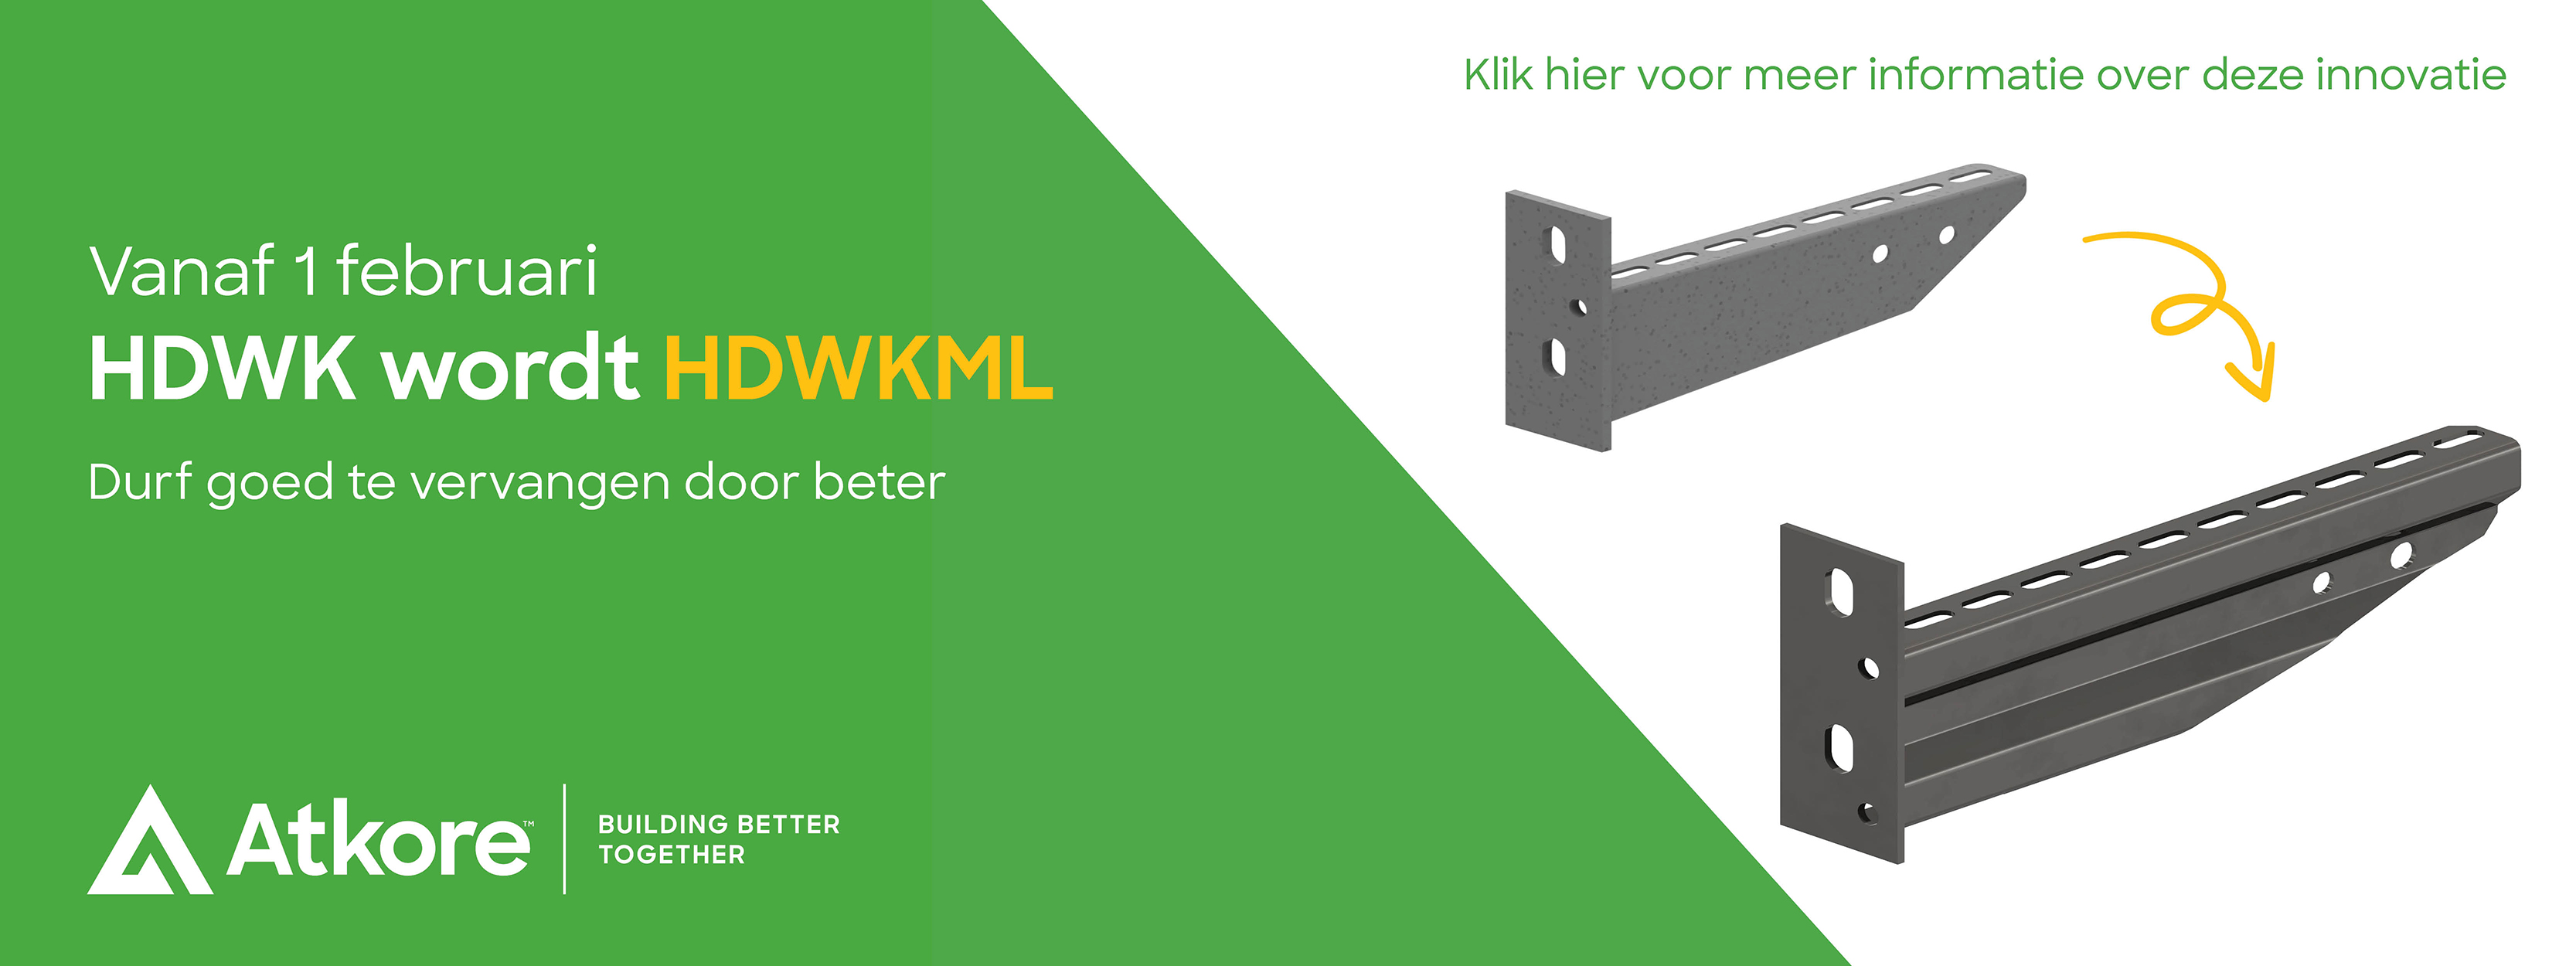 HDWKML_3333X1250_website banner_NL